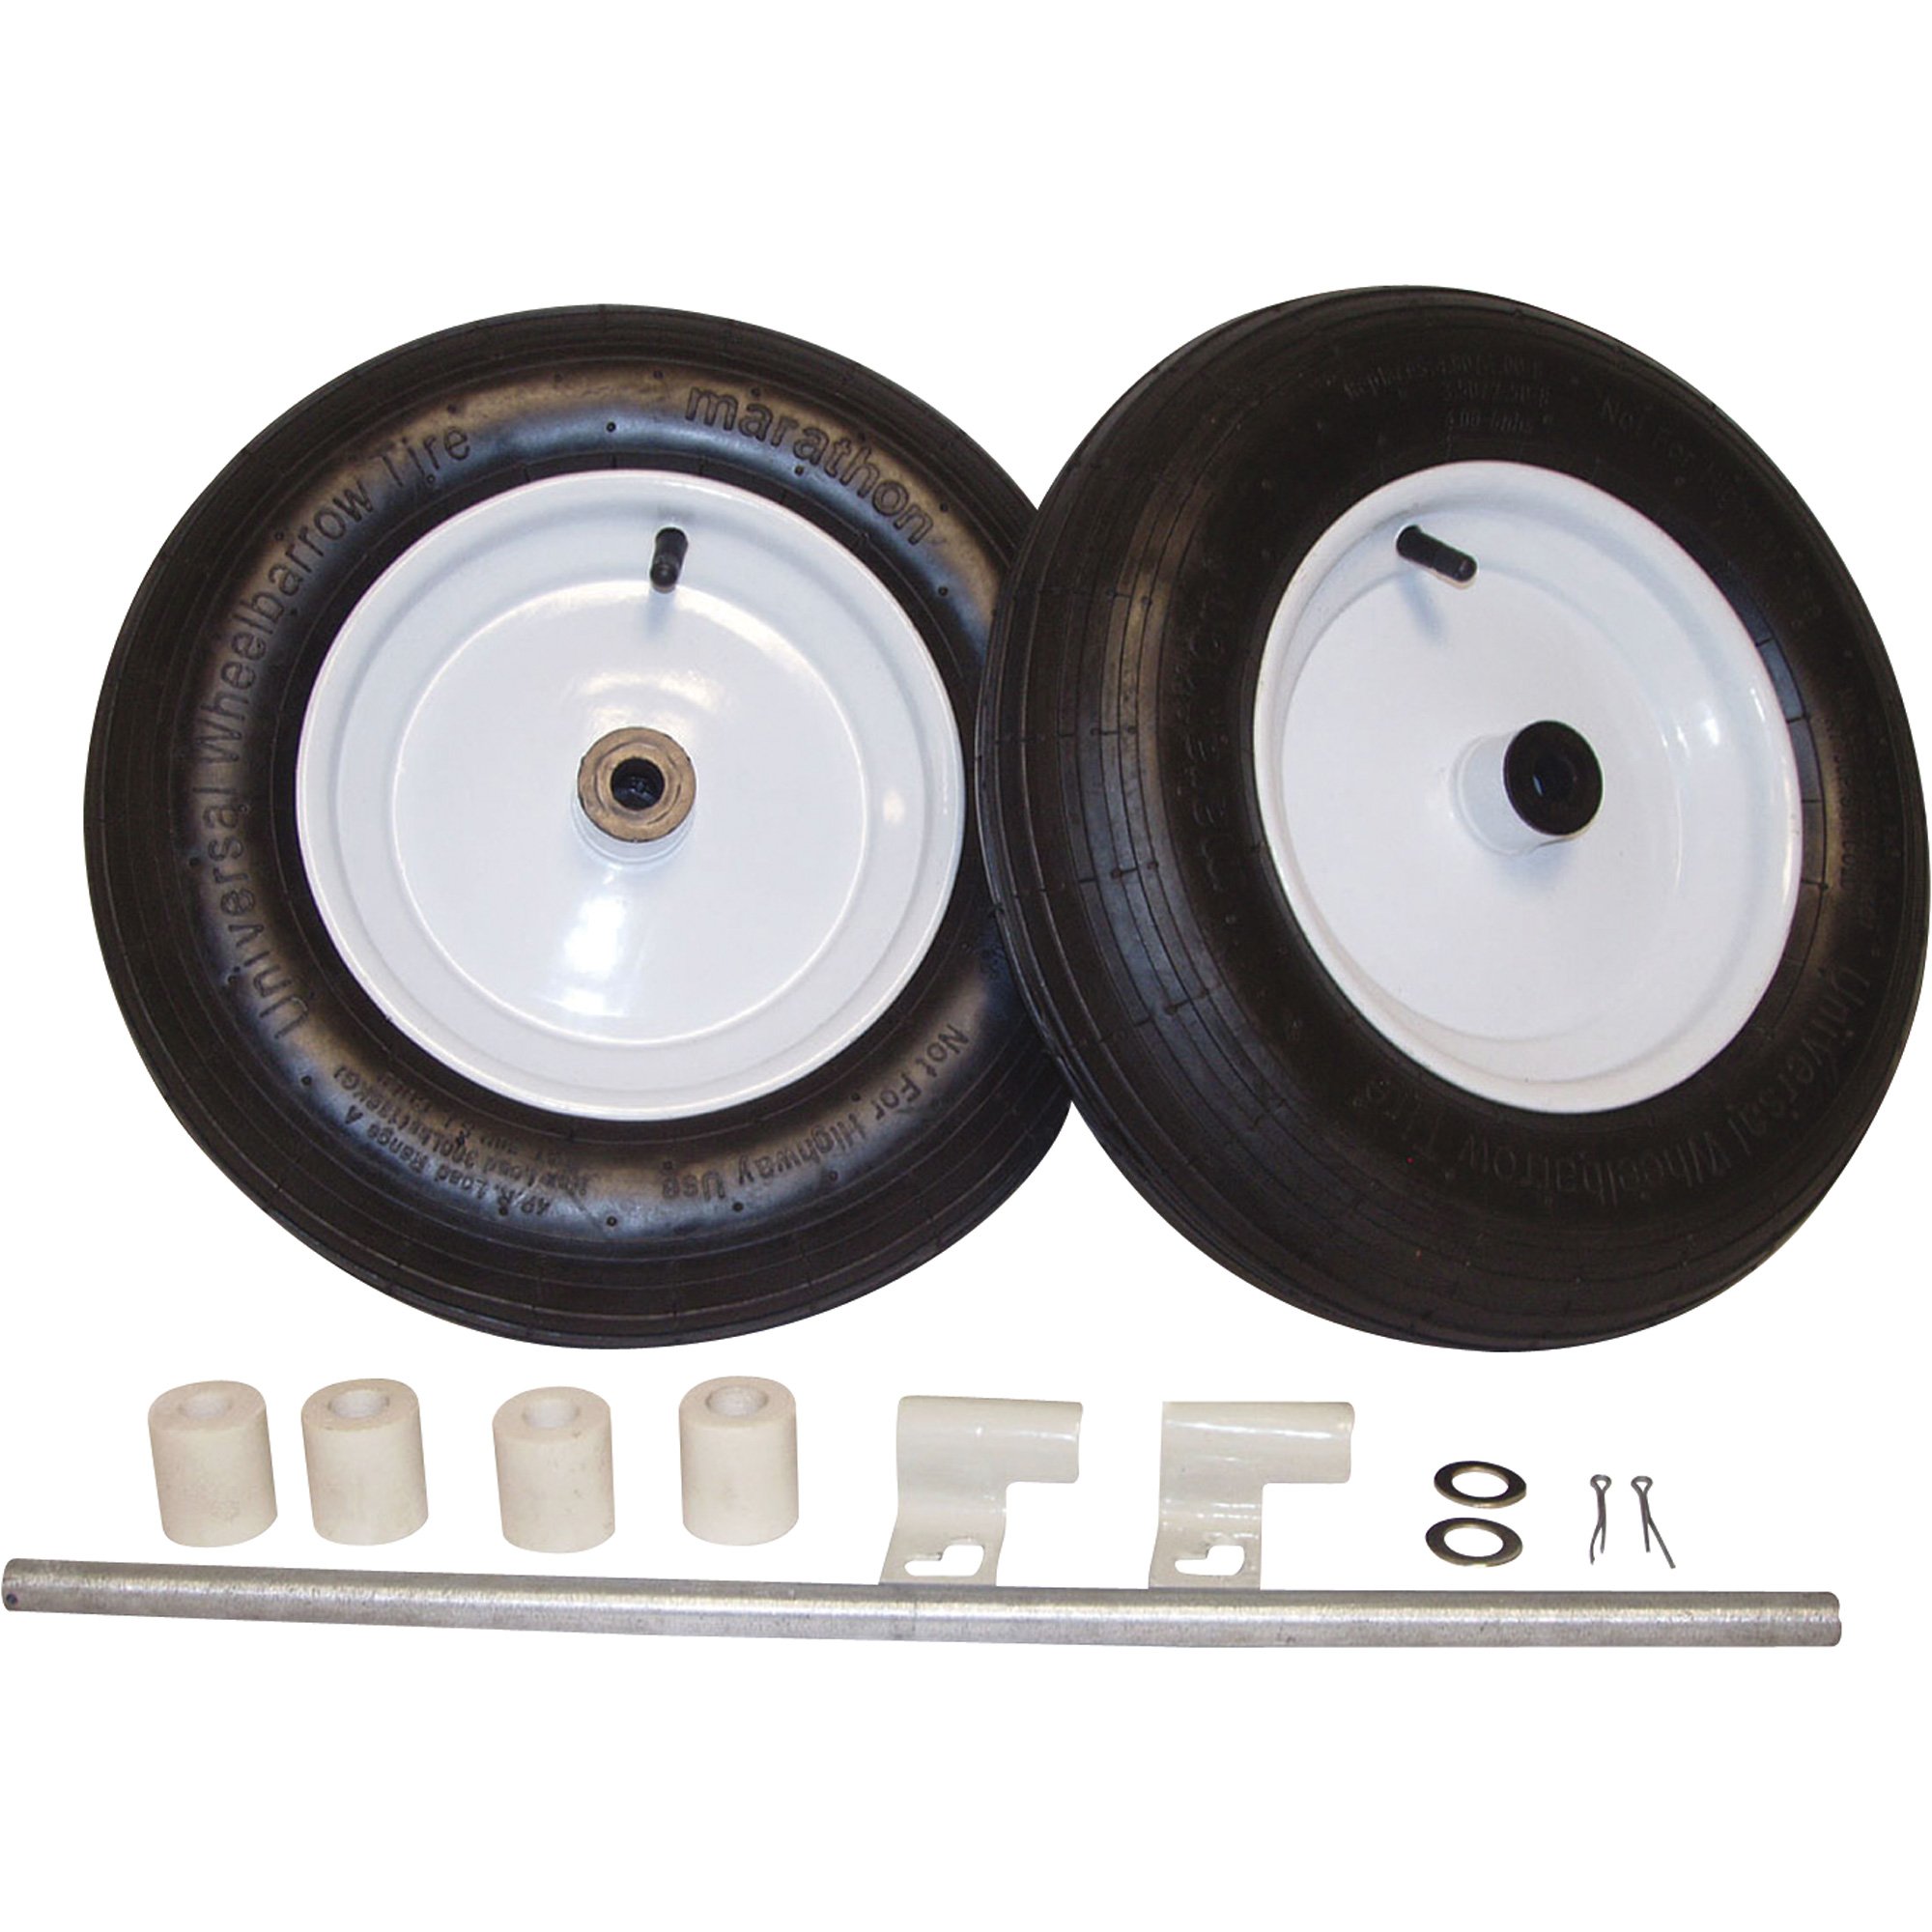 HI-RUN, Wheelbarrow Tire Assembly, Rib, 5/8in. bearings, Tire Size